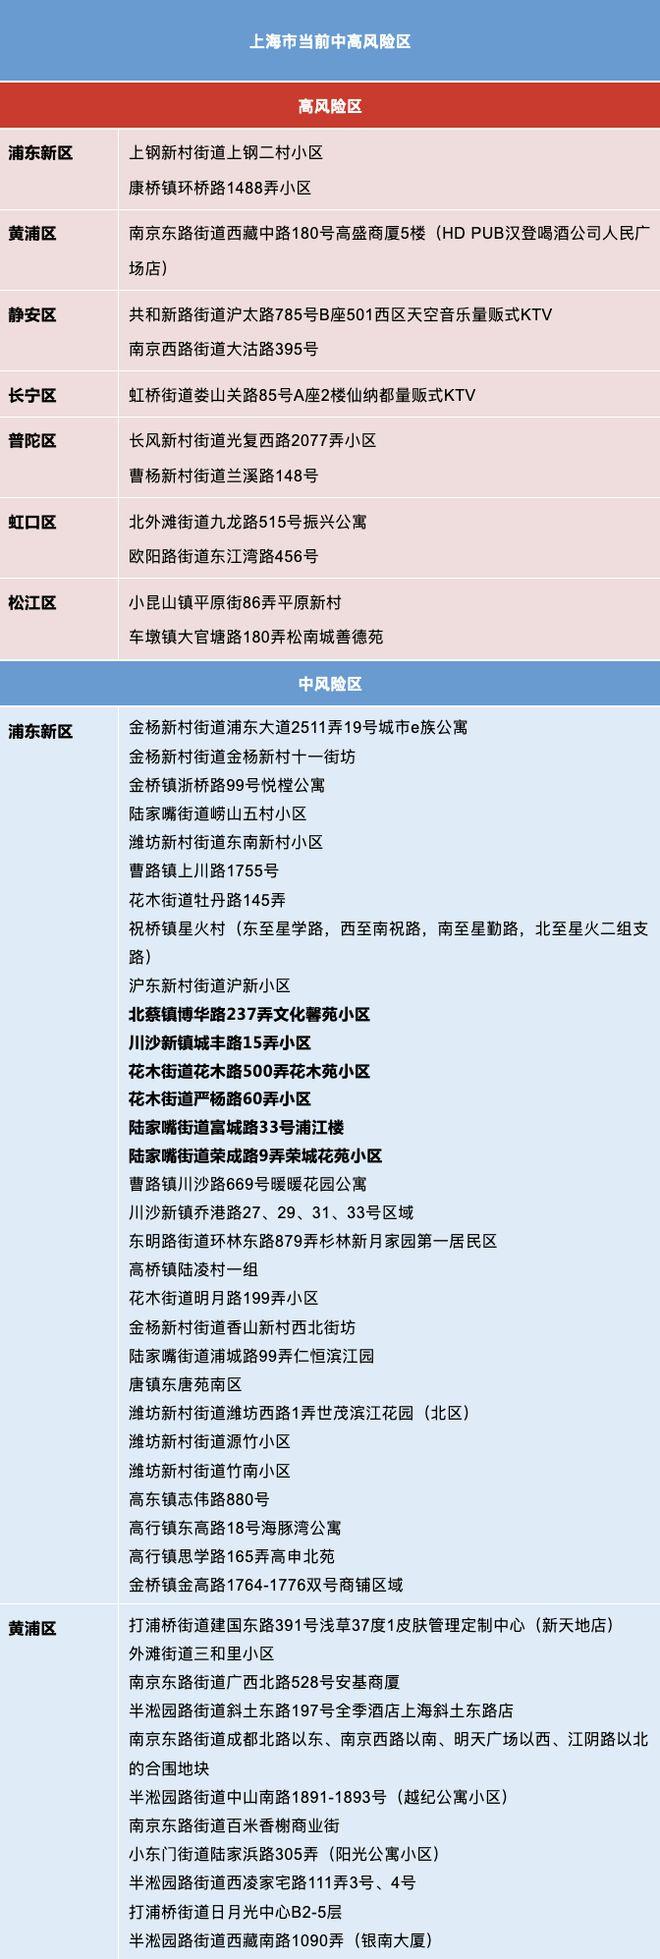 截至7月10日 上海有12个高风险区186个中风险区